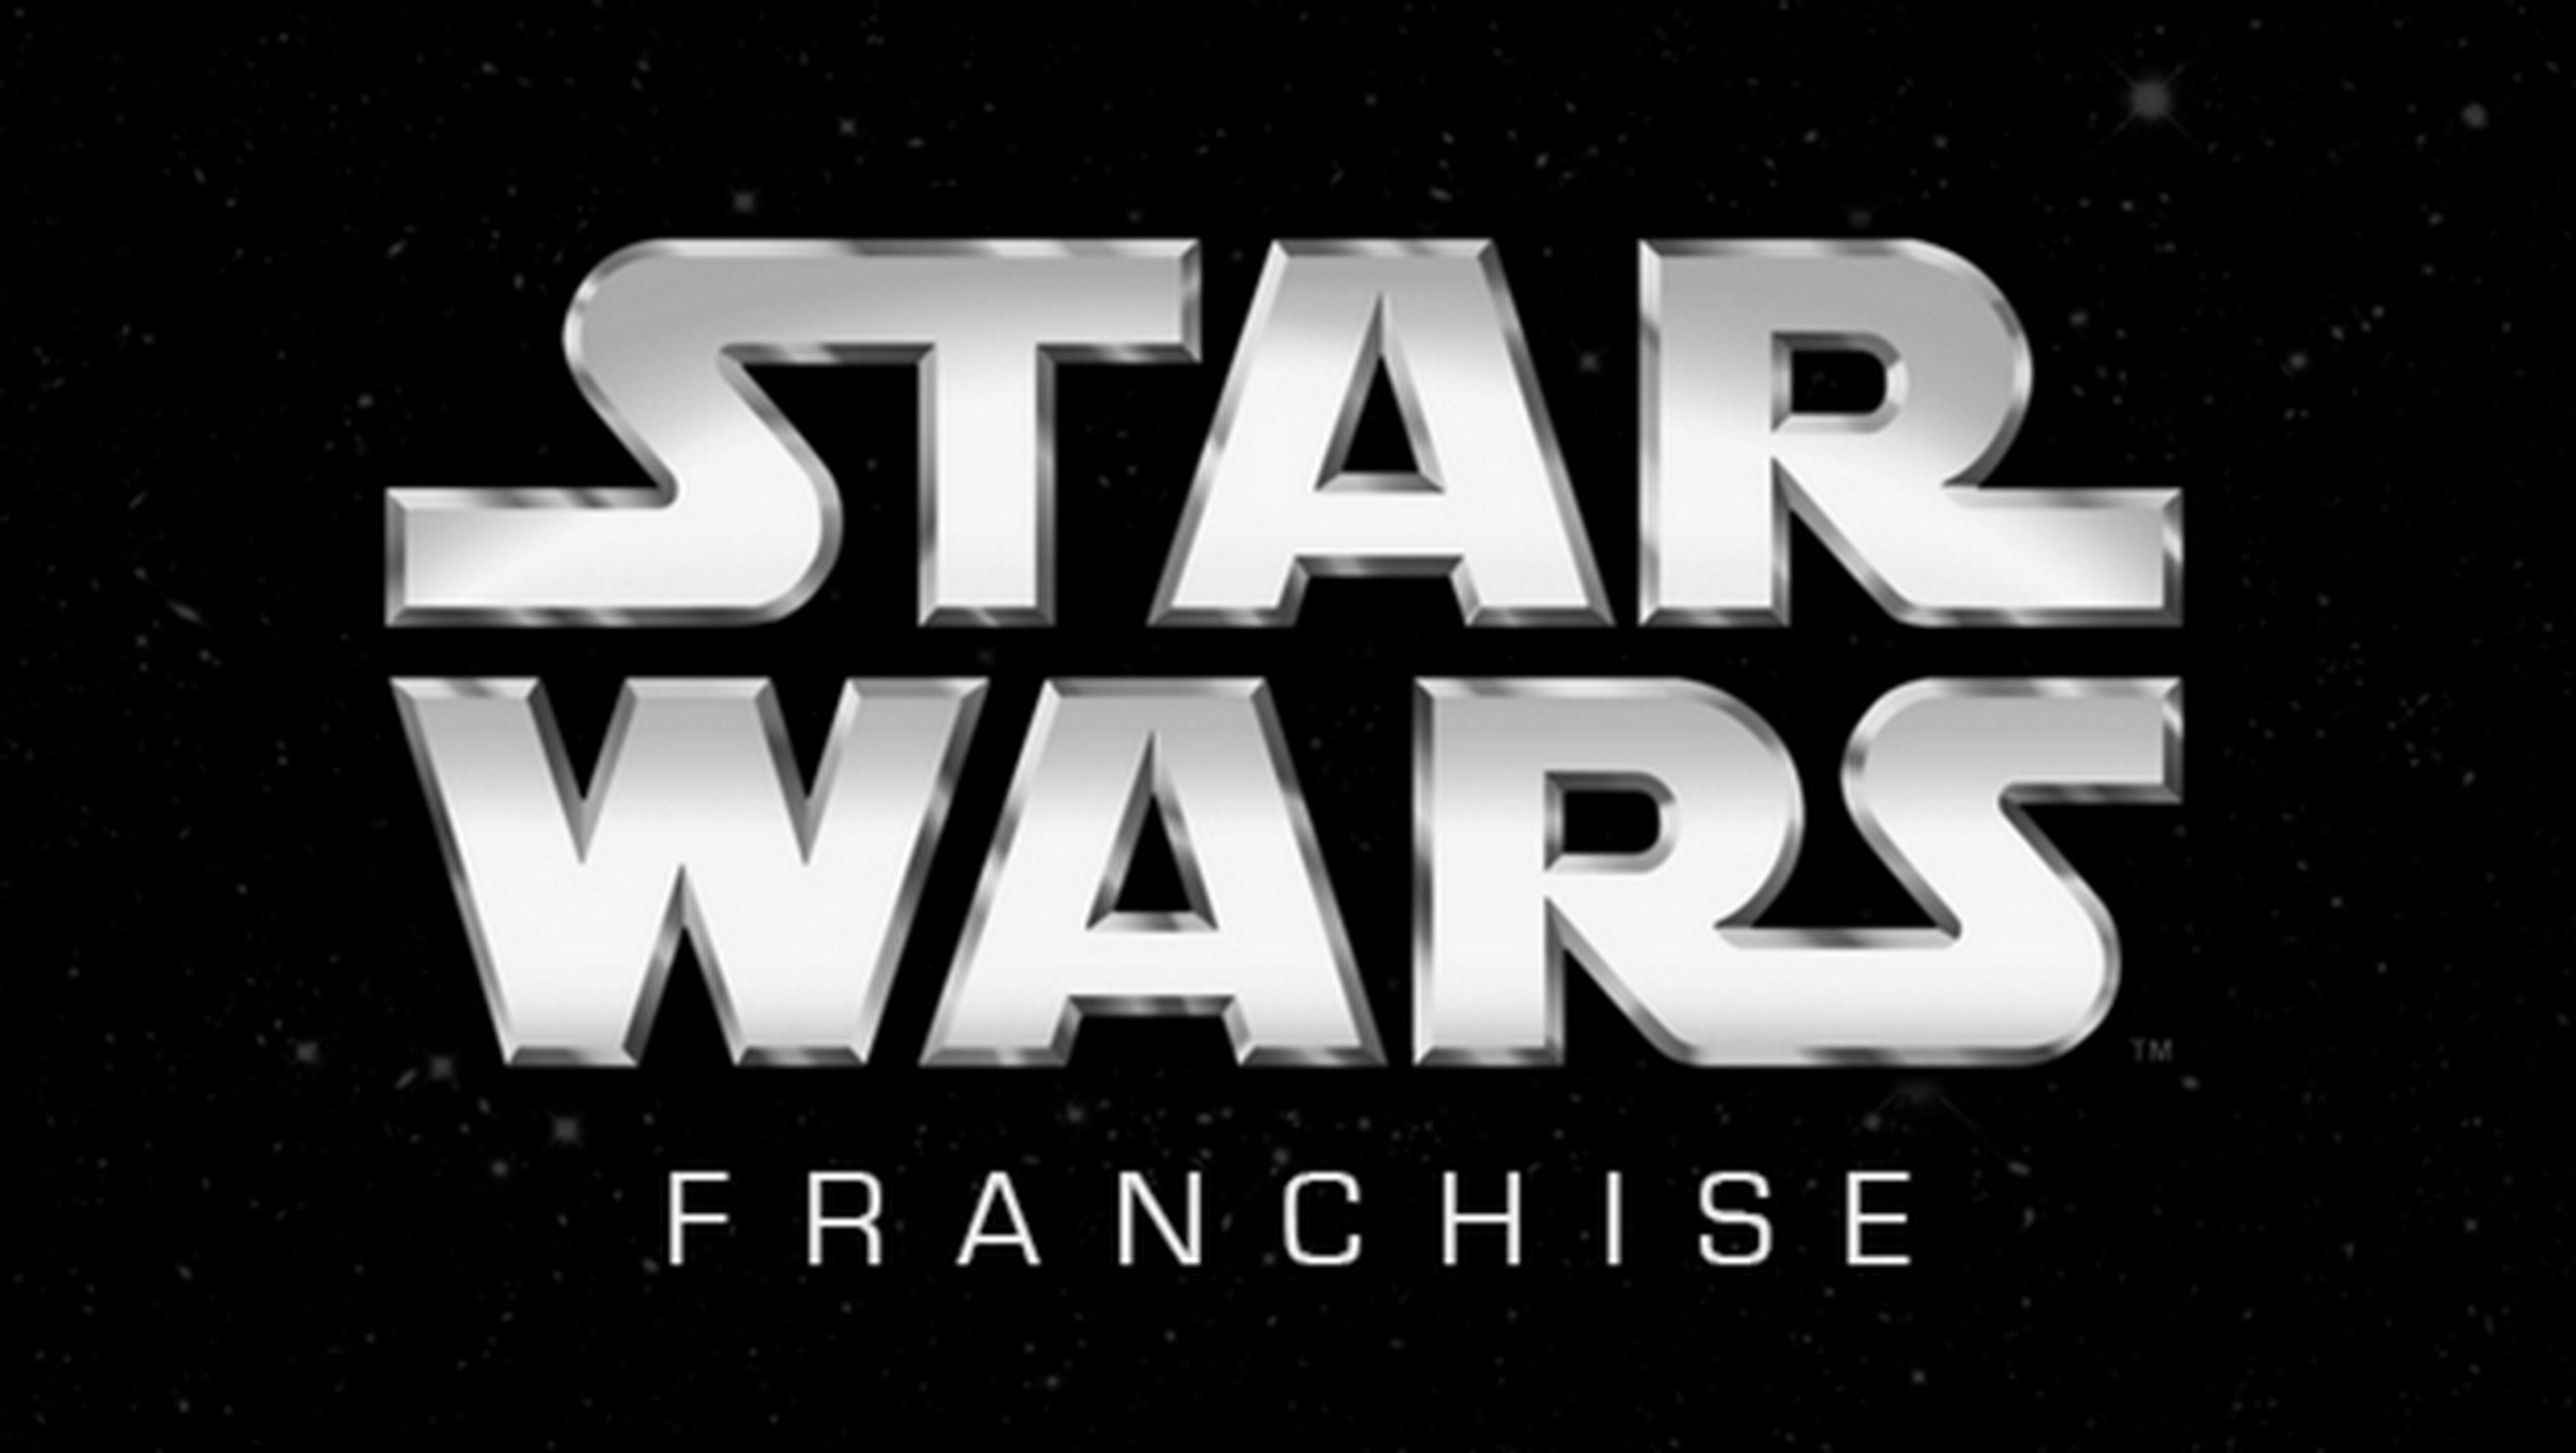 Juegos de Star Wars casi gratis en Steam por el estreno de Rogue One